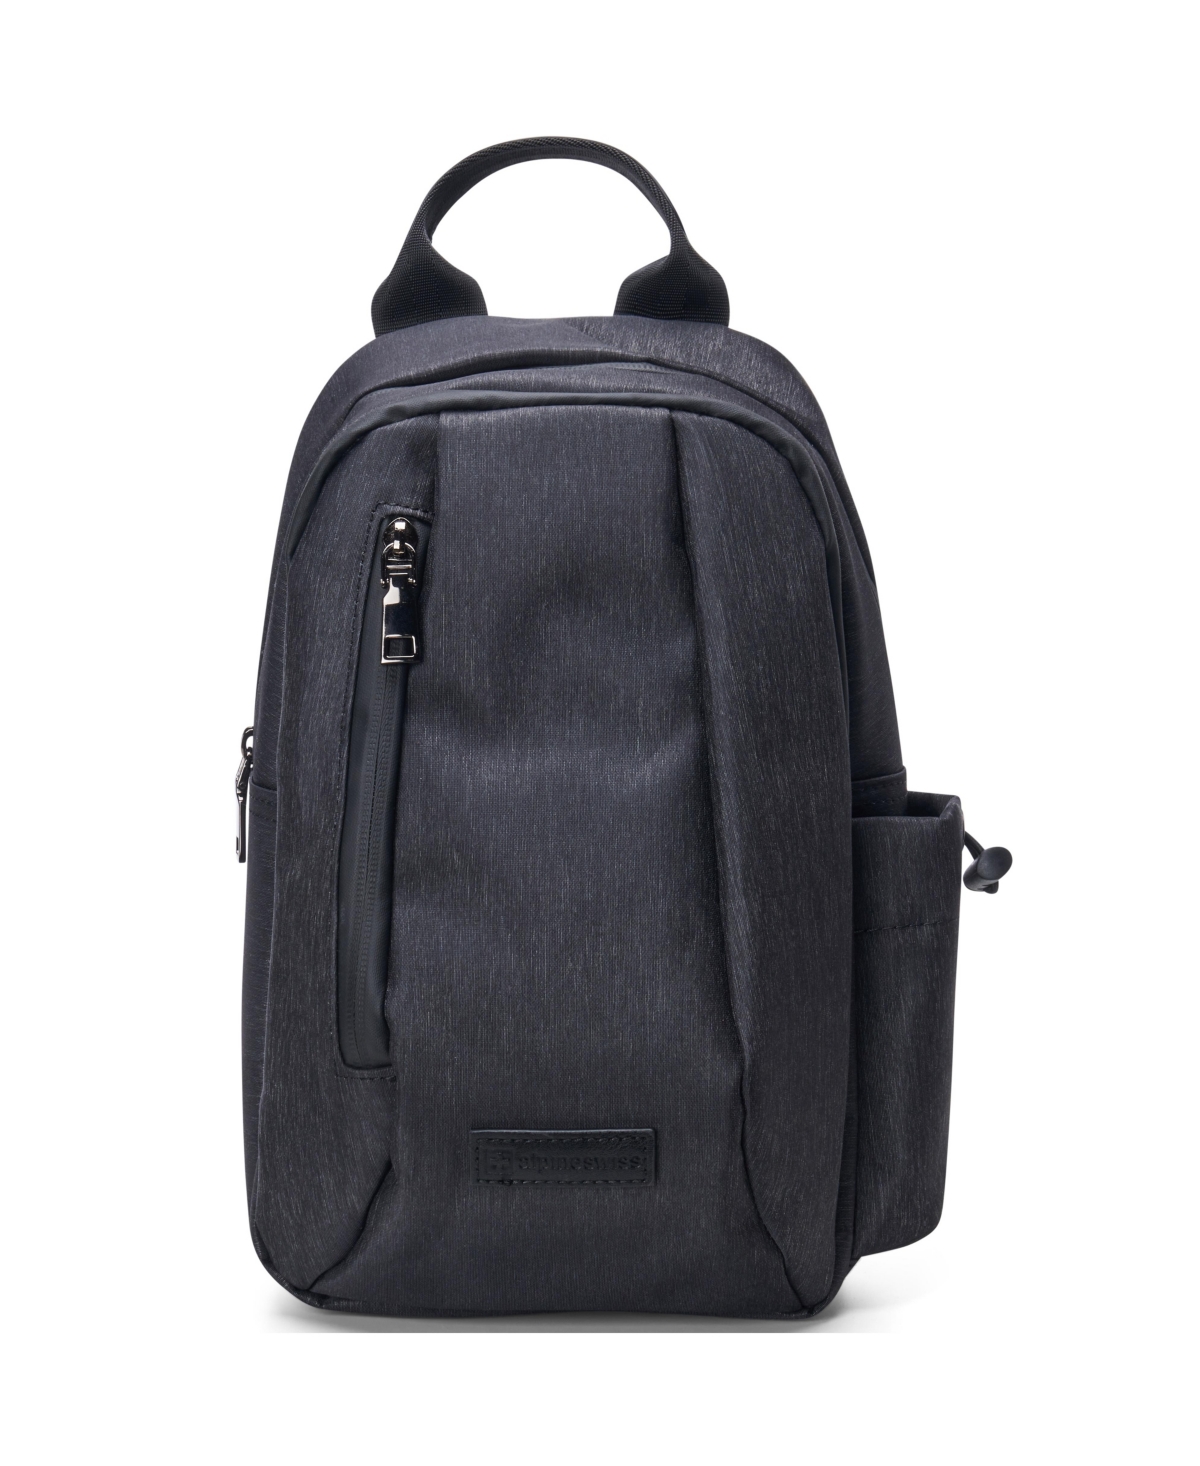 Sling Bag Crossbody Backpack Chest Pack Casual Day Bag Shoulder Bag - Black